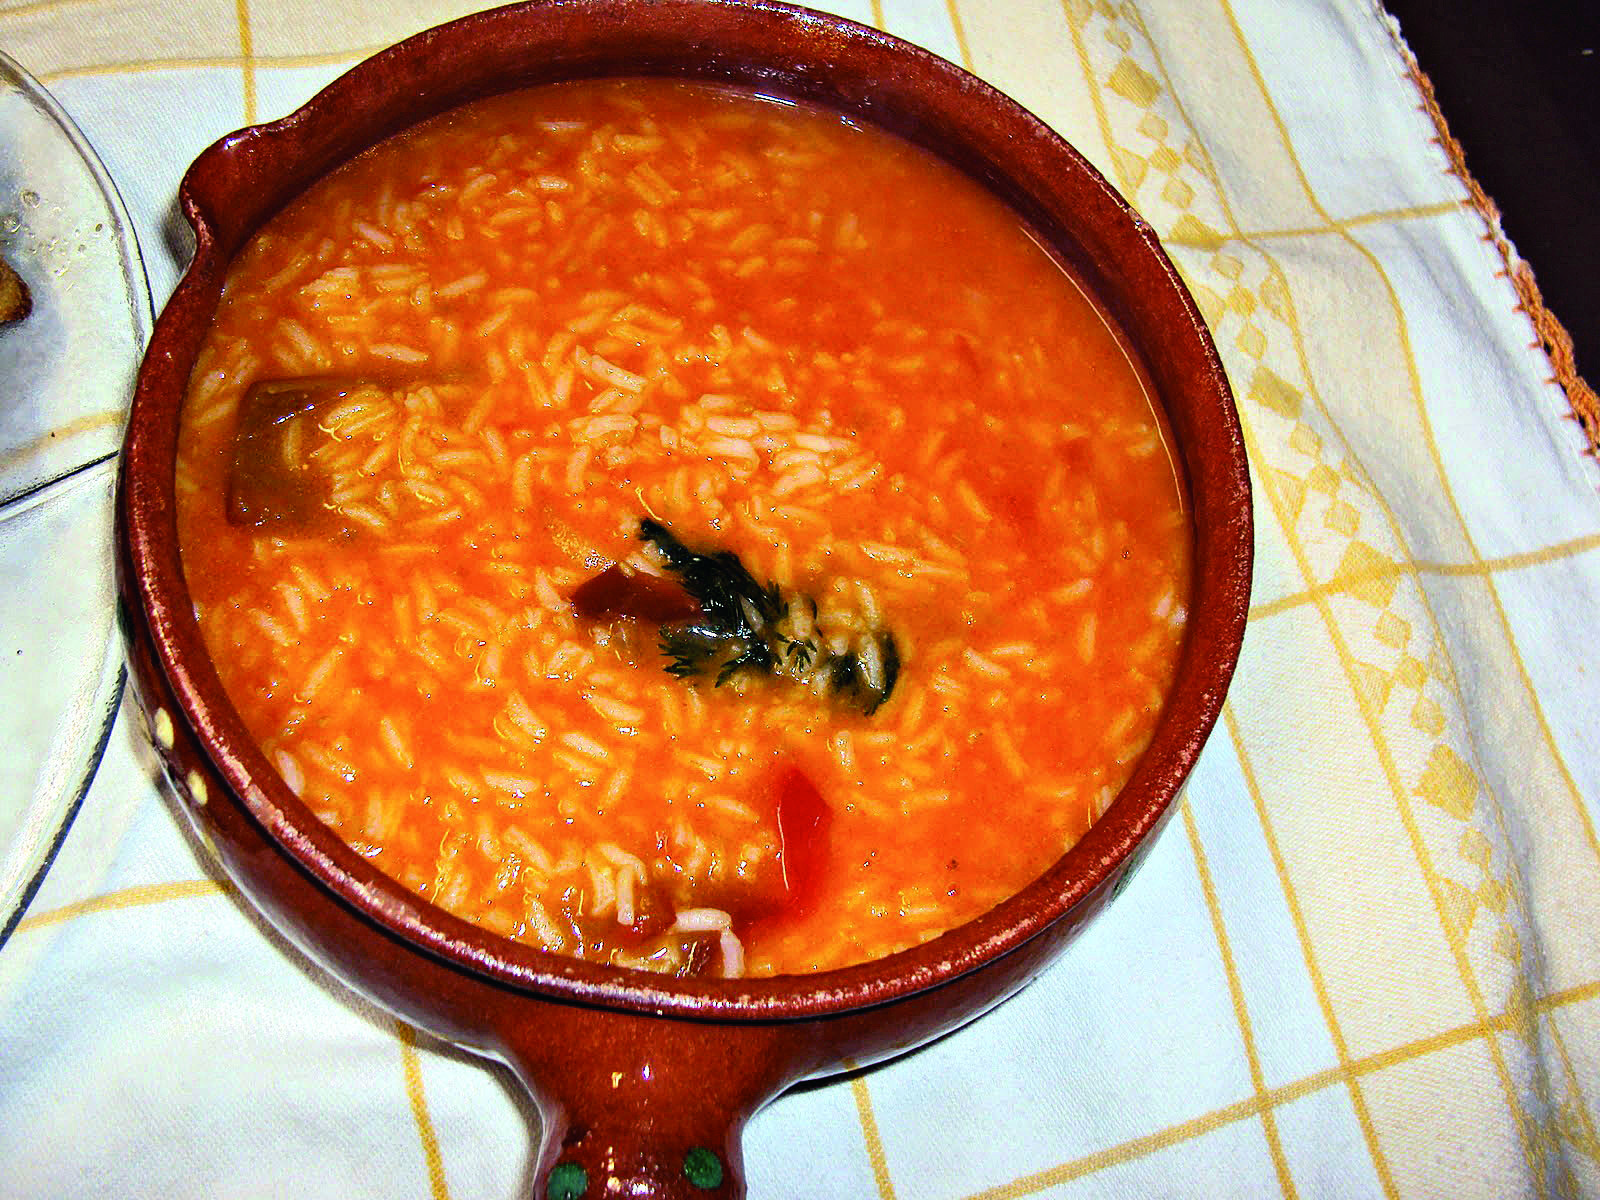 arroz de tomate.jpg